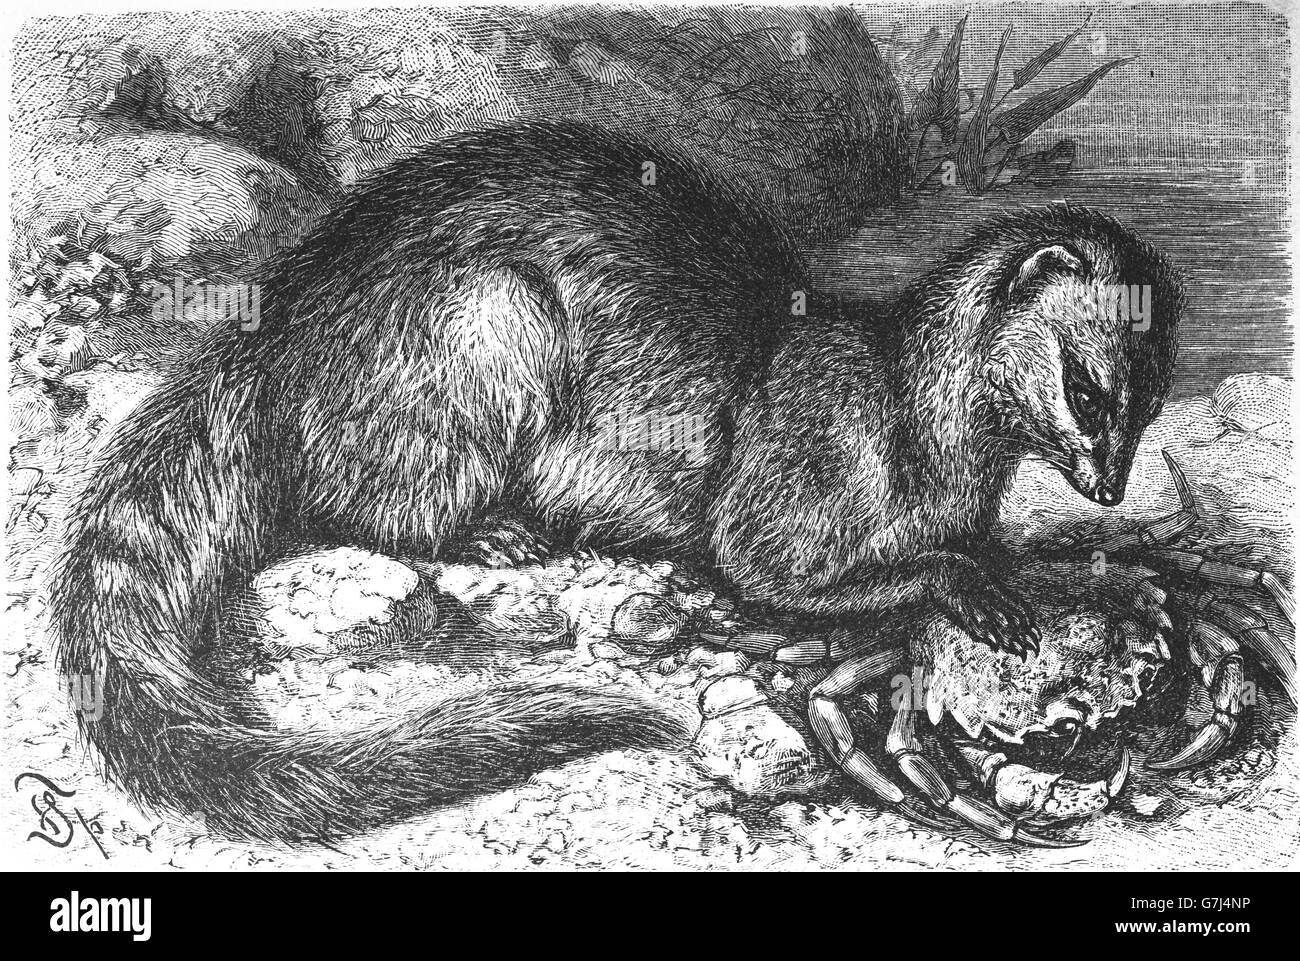 Manger du crabe, la mangouste Herpestes urva, illustration de livre daté 1904 Banque D'Images